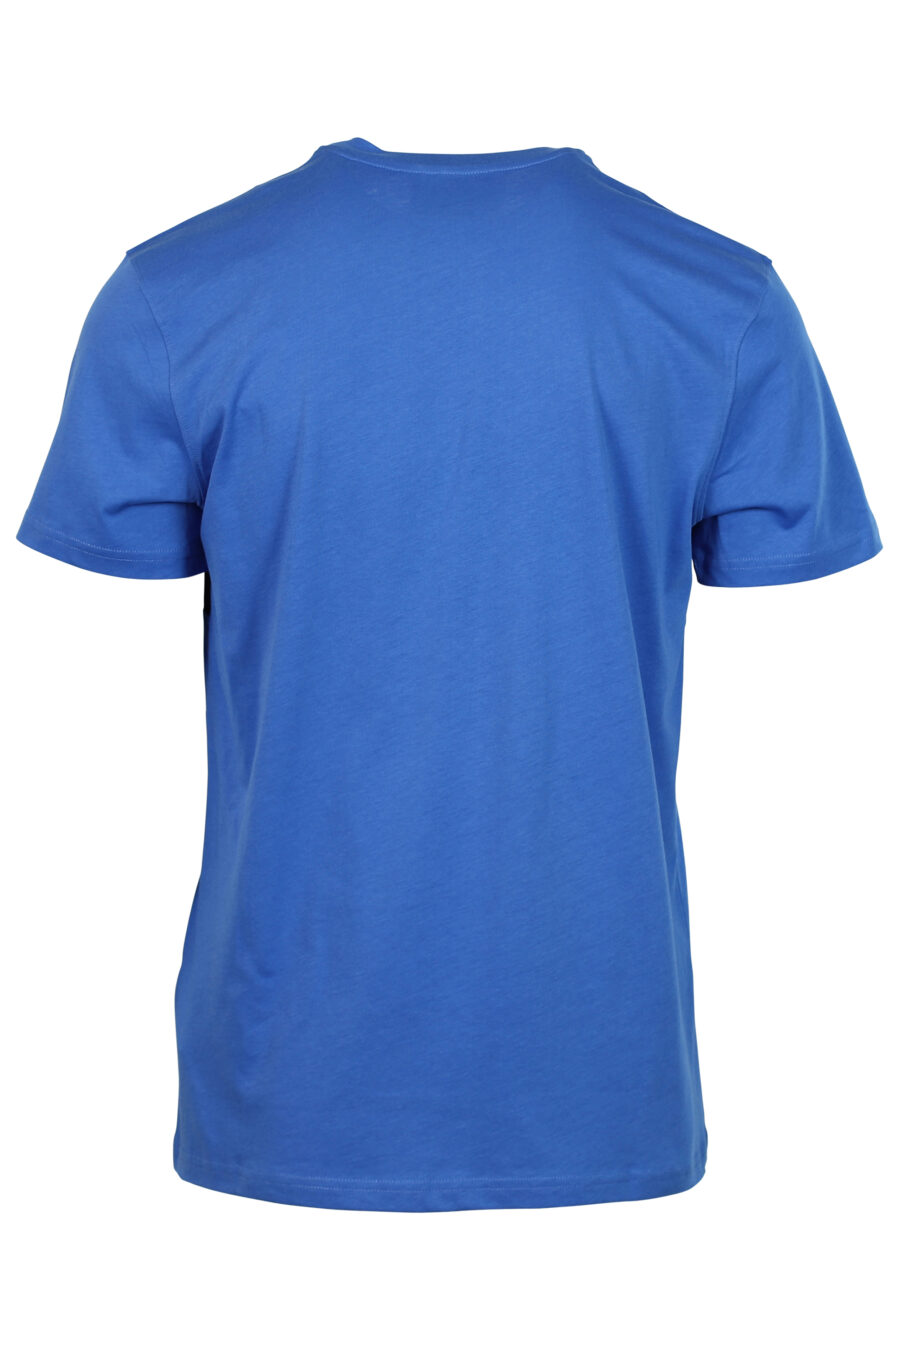 Blaues T-Shirt mit schwarzem Logo-Streifen - 667112834116 2